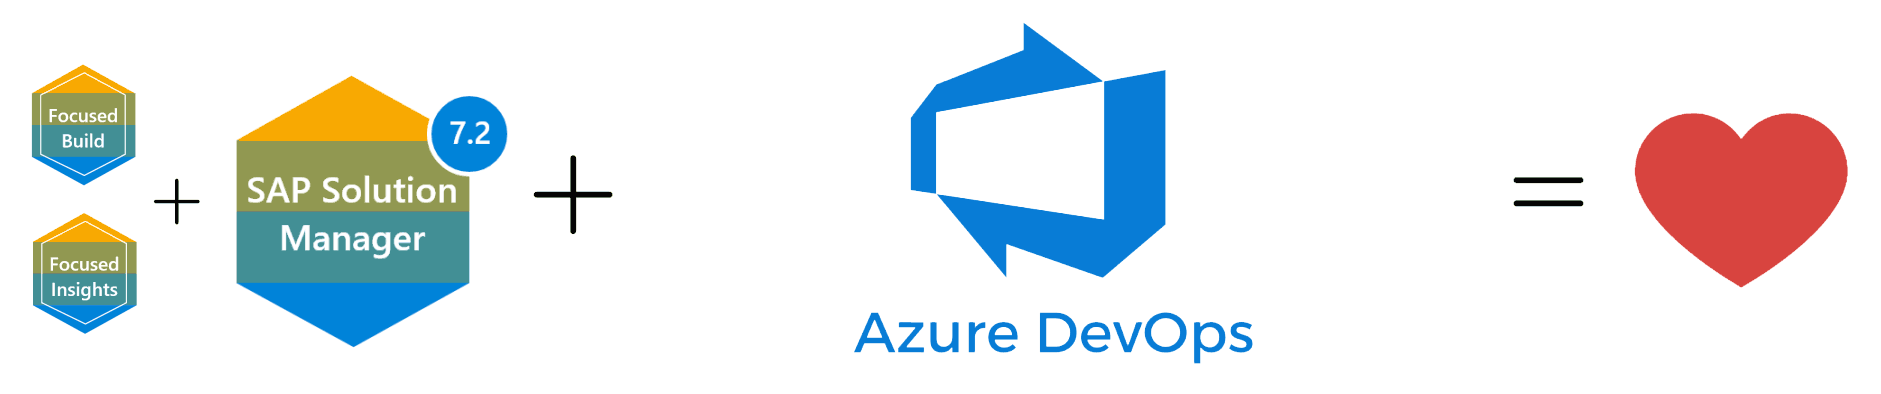 Azure DevOps Connector For SAP Solution Manager Focused Build